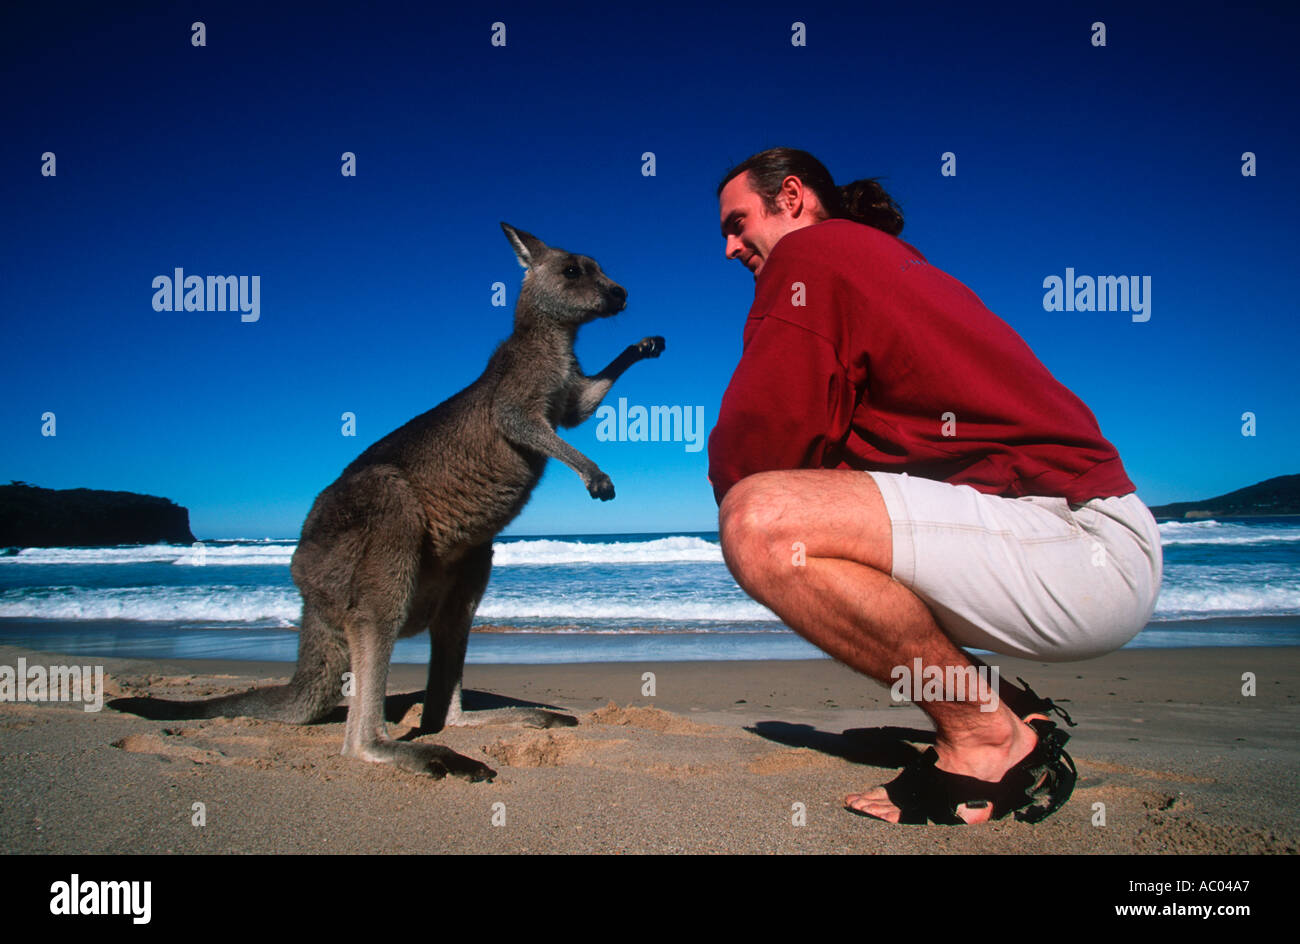 Menschen Touristen trifft ein Känguru auf steinigen Strand Modell freigegeben Australien Stockfoto